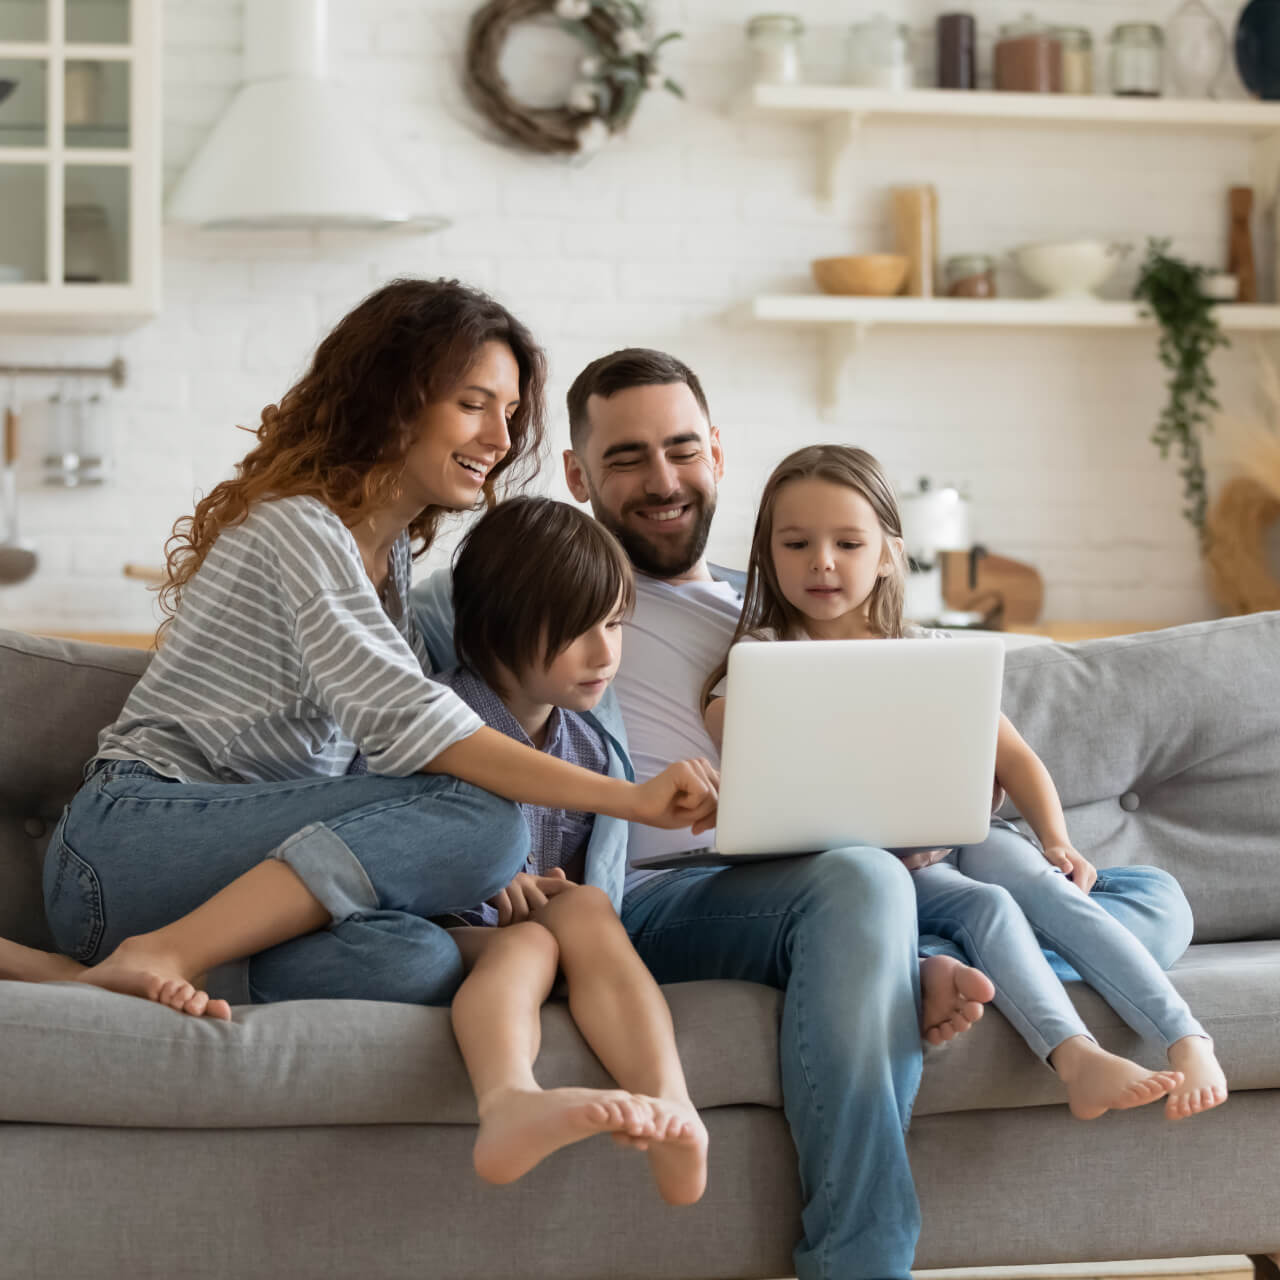 Family shopping for renters insurance online